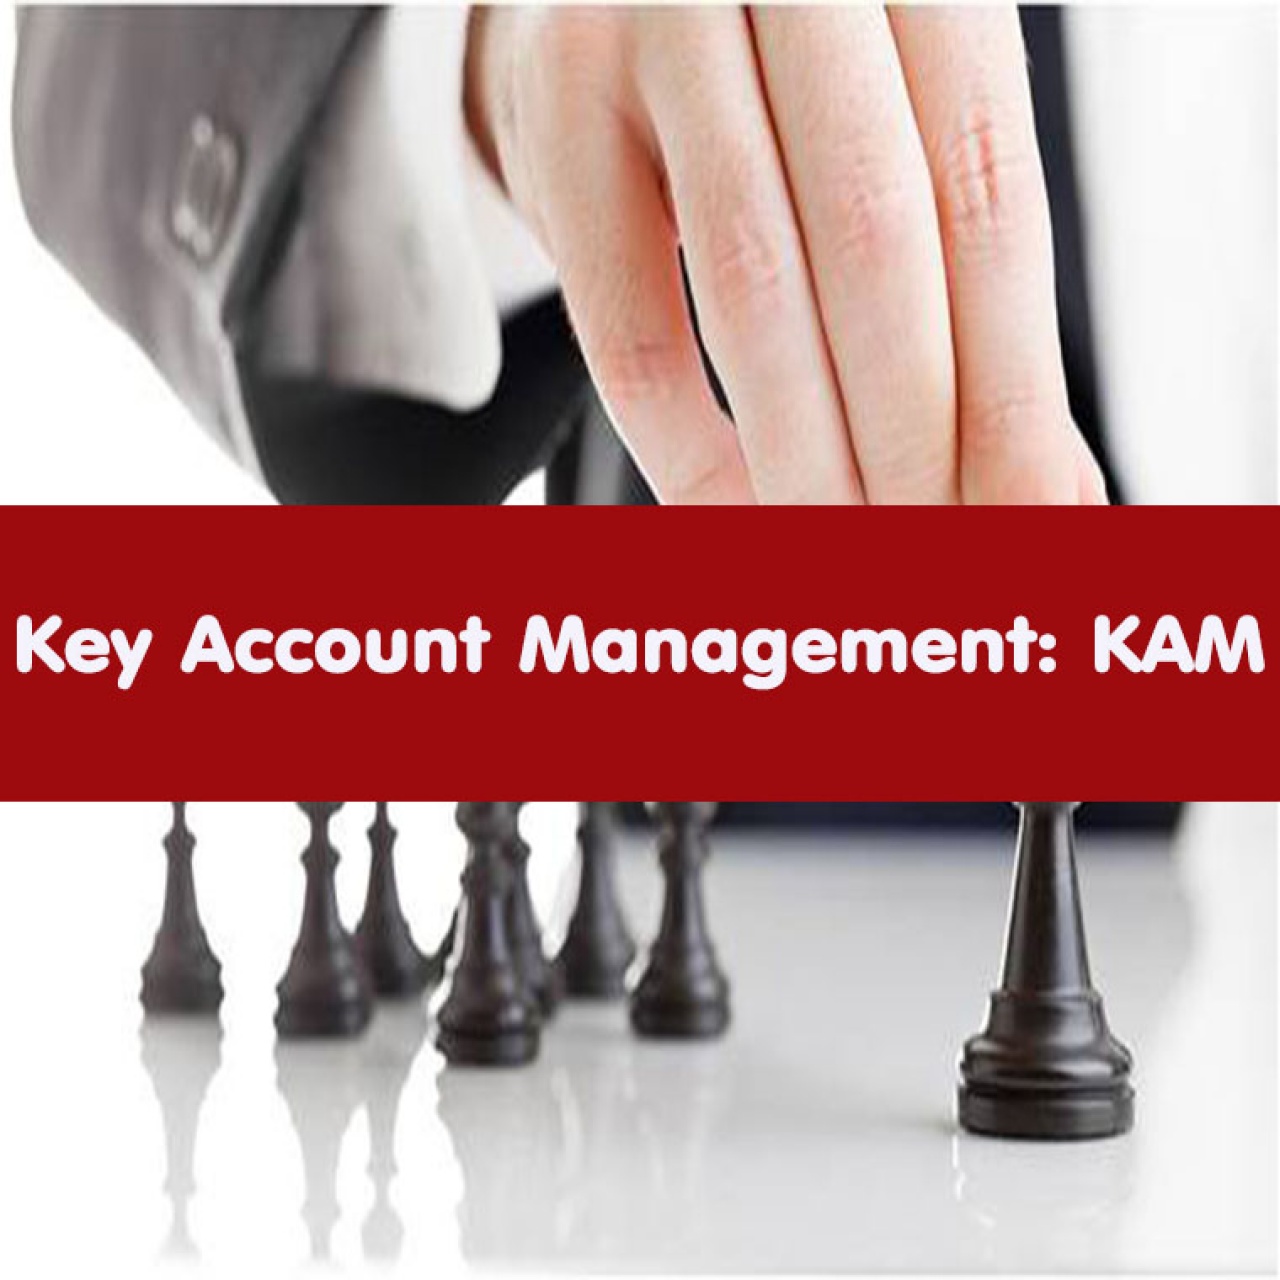 เทคนิคการบริหารลูกค้ารายสำคัญ Key Account Management อบรม 29 ส.ค. 66